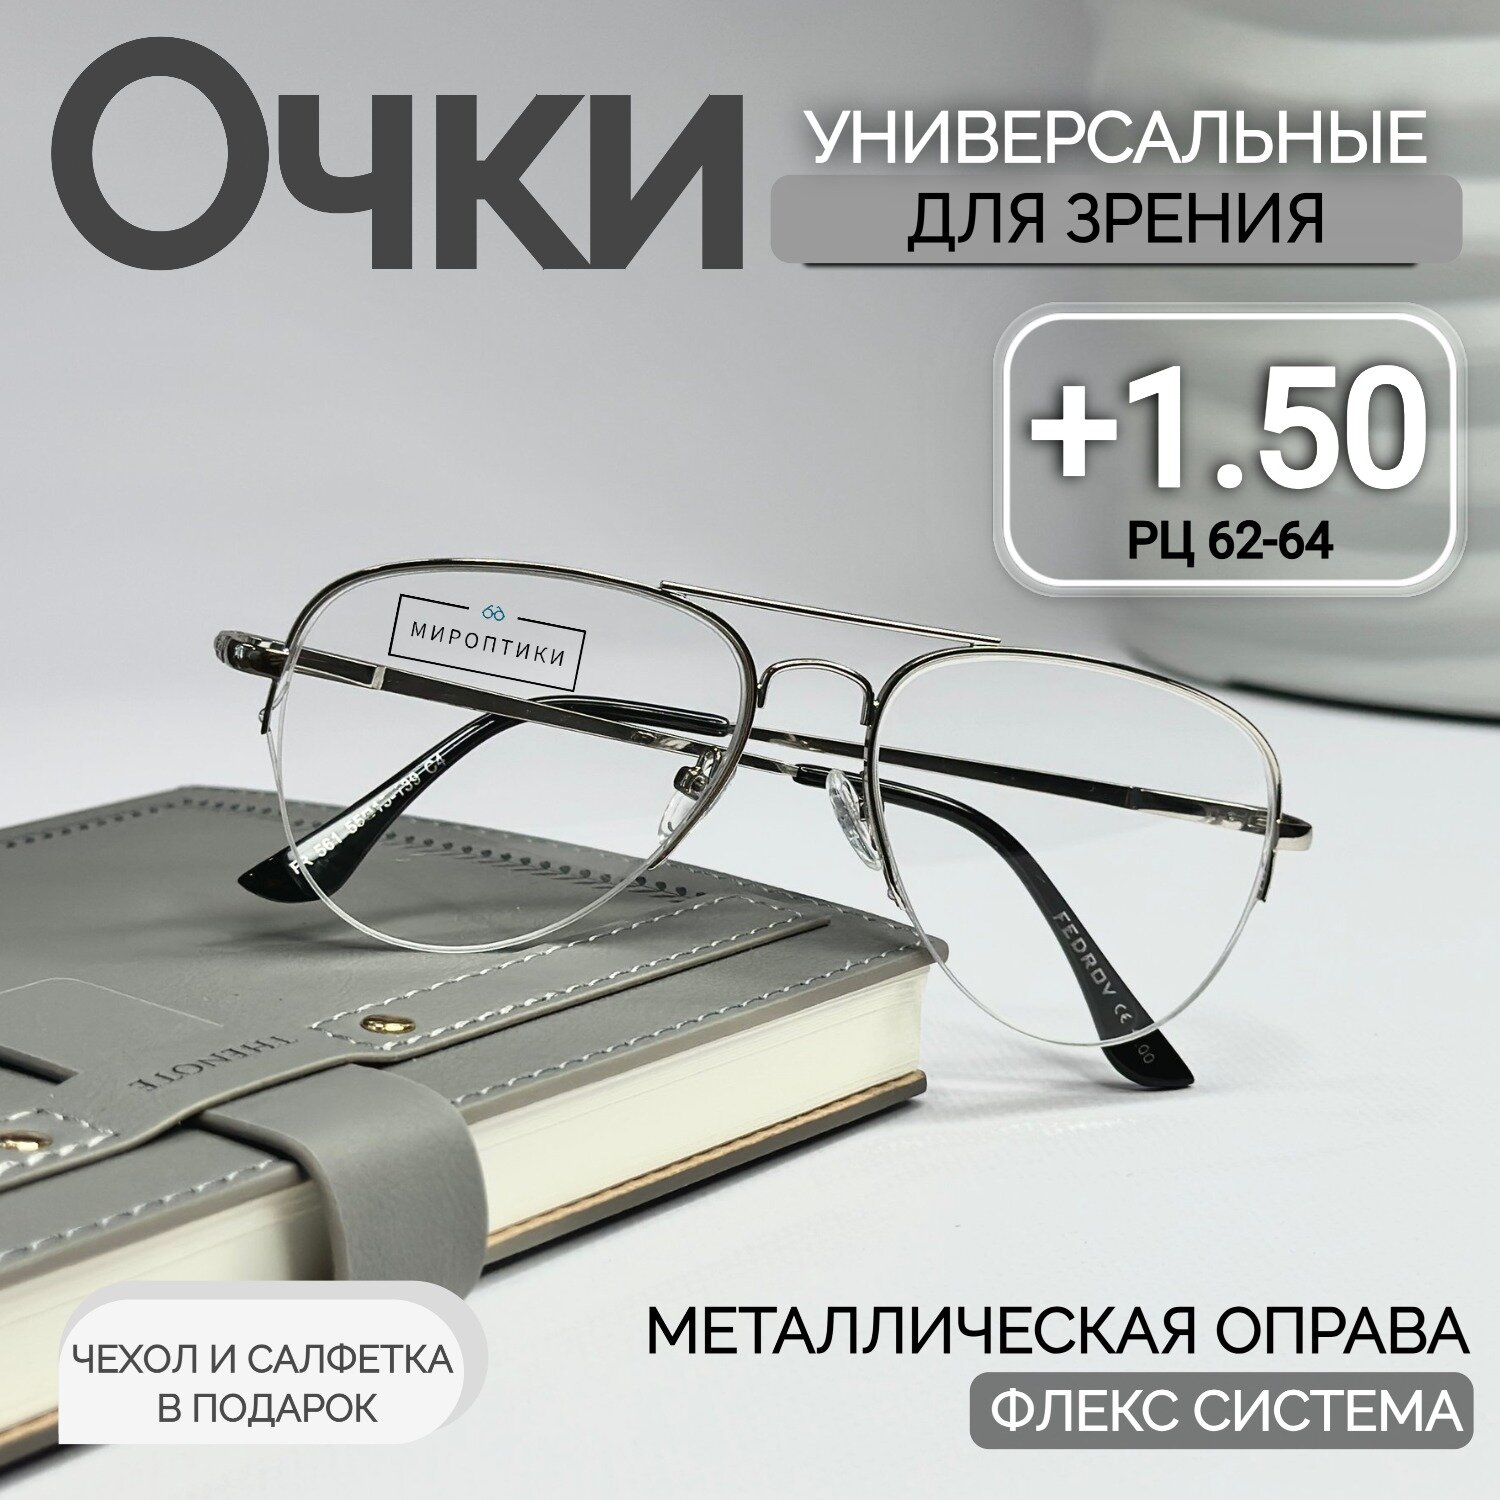 Очки для зрения Fedrov 561 серебро, авиаторы, для чтения с диоптриями +1.50 (чехол и салфетка в подарок)